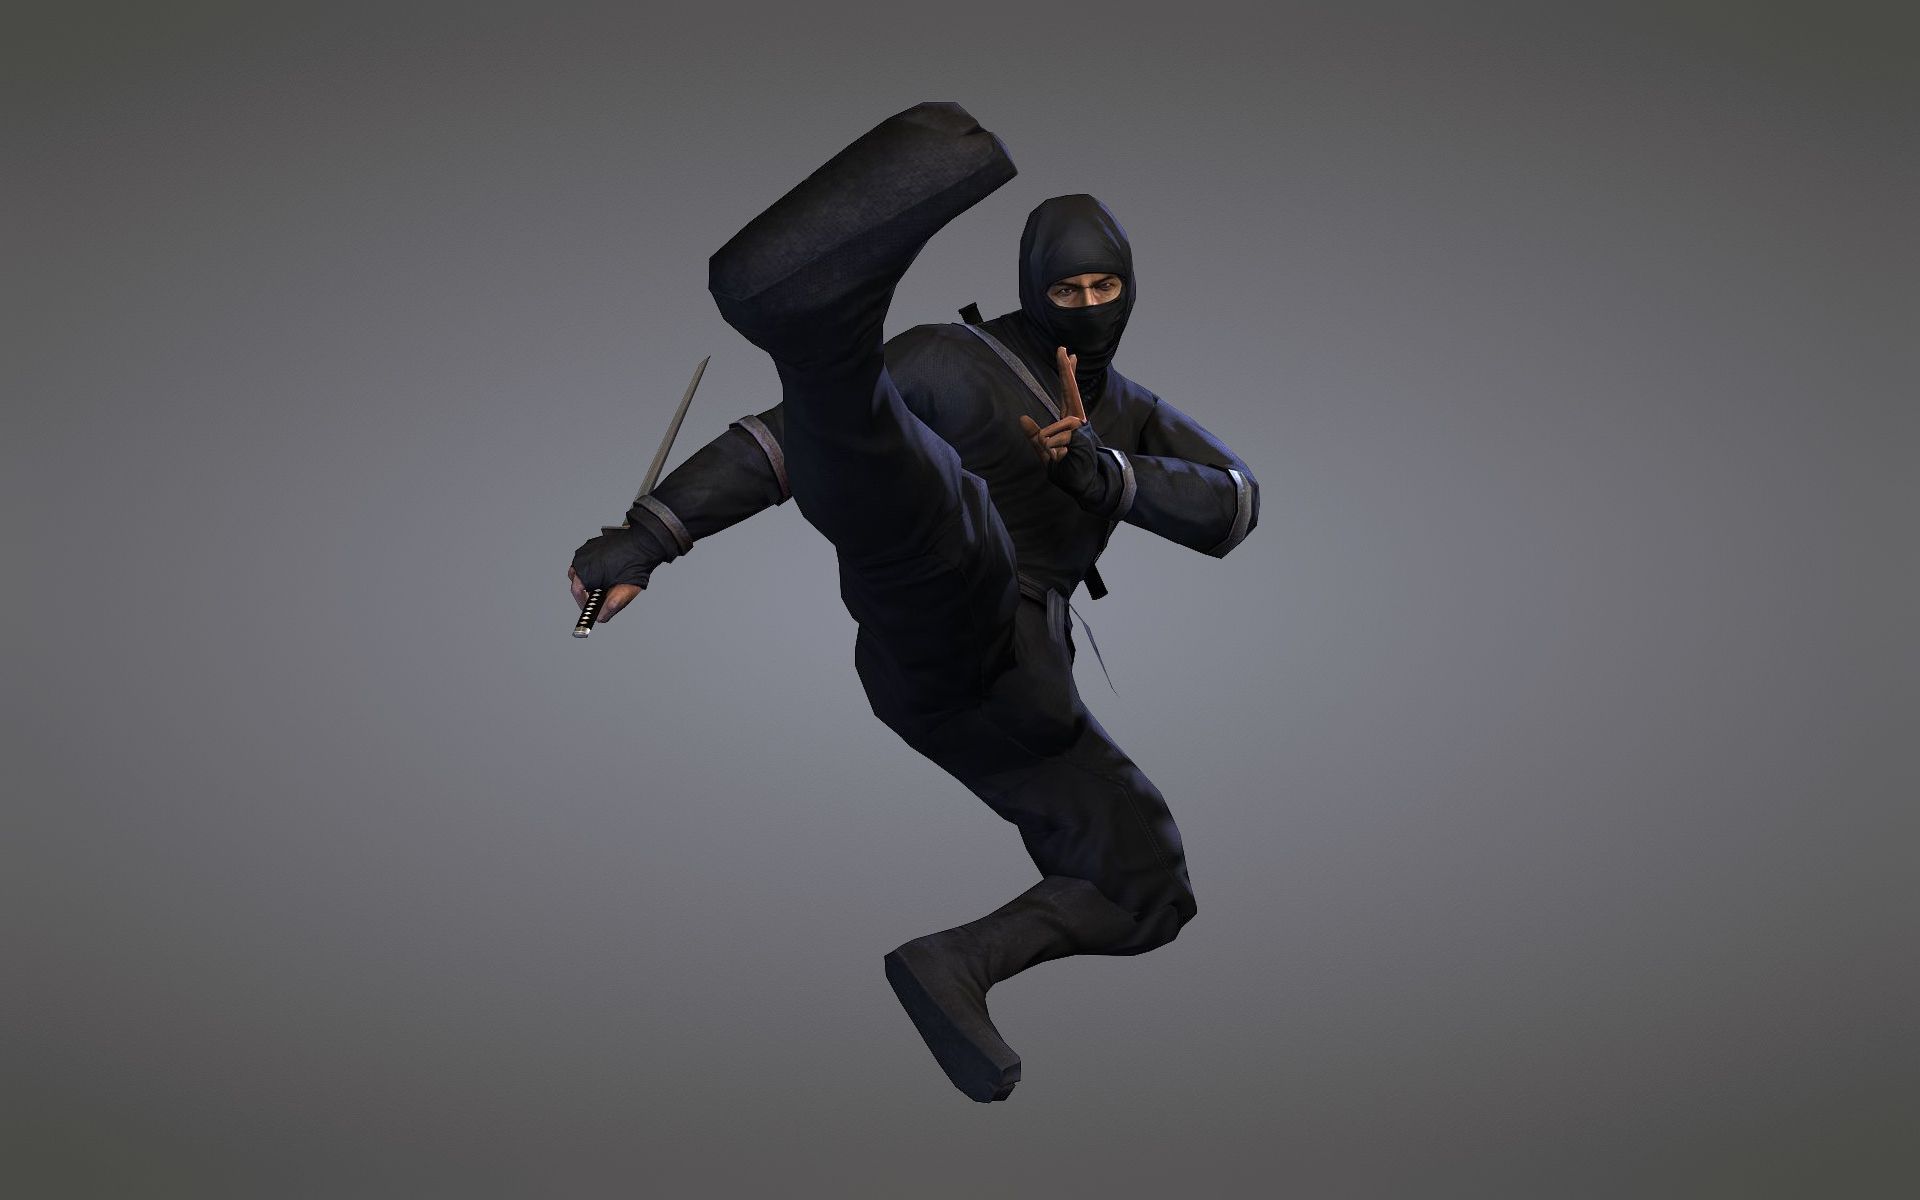 Black Suit, Ninja, Jump, Ninja Wallpaper & Background Image